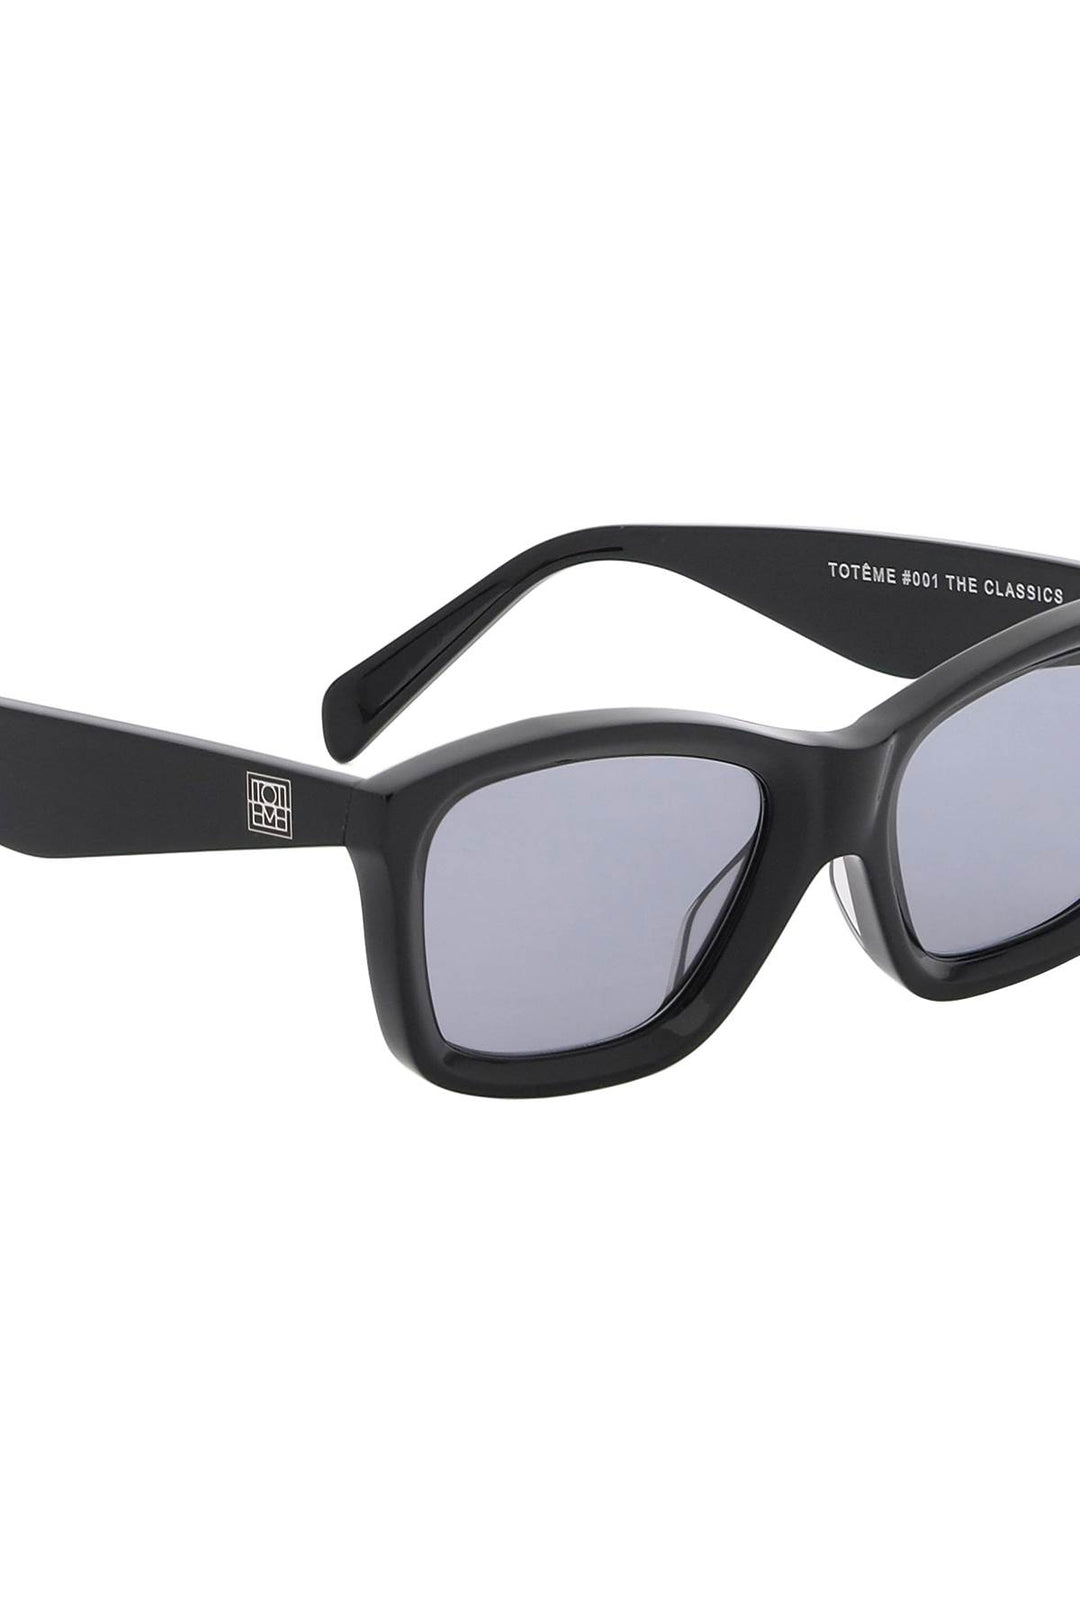 Toteme The Classics Sunglasses   Nero